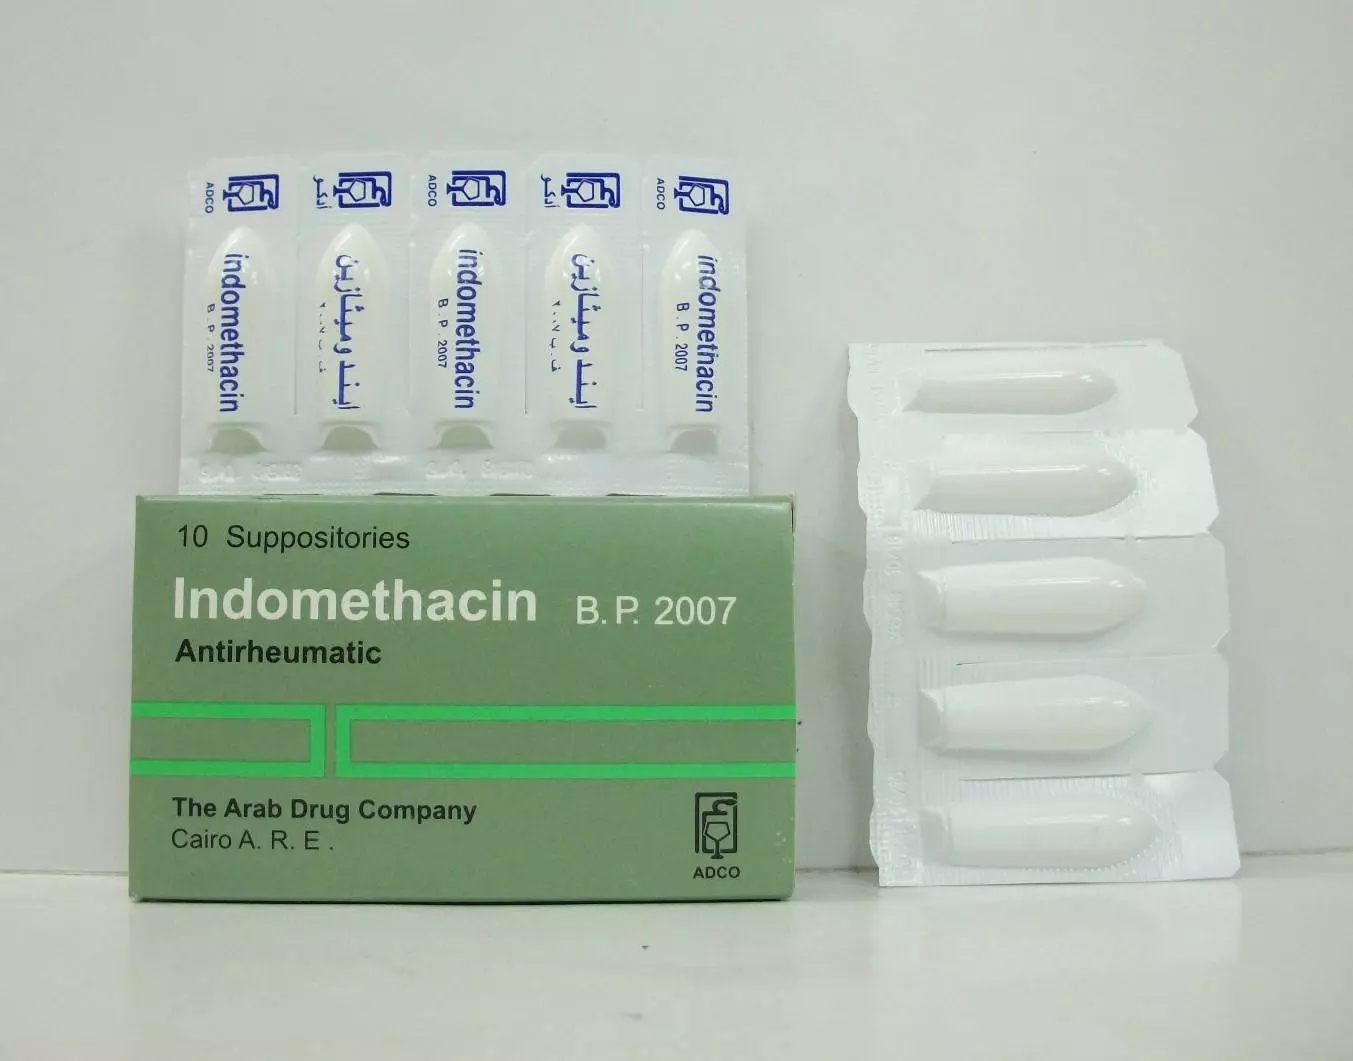 اندوميثاسين: الاستخدام – الأعراض الجانبية – الجرعة